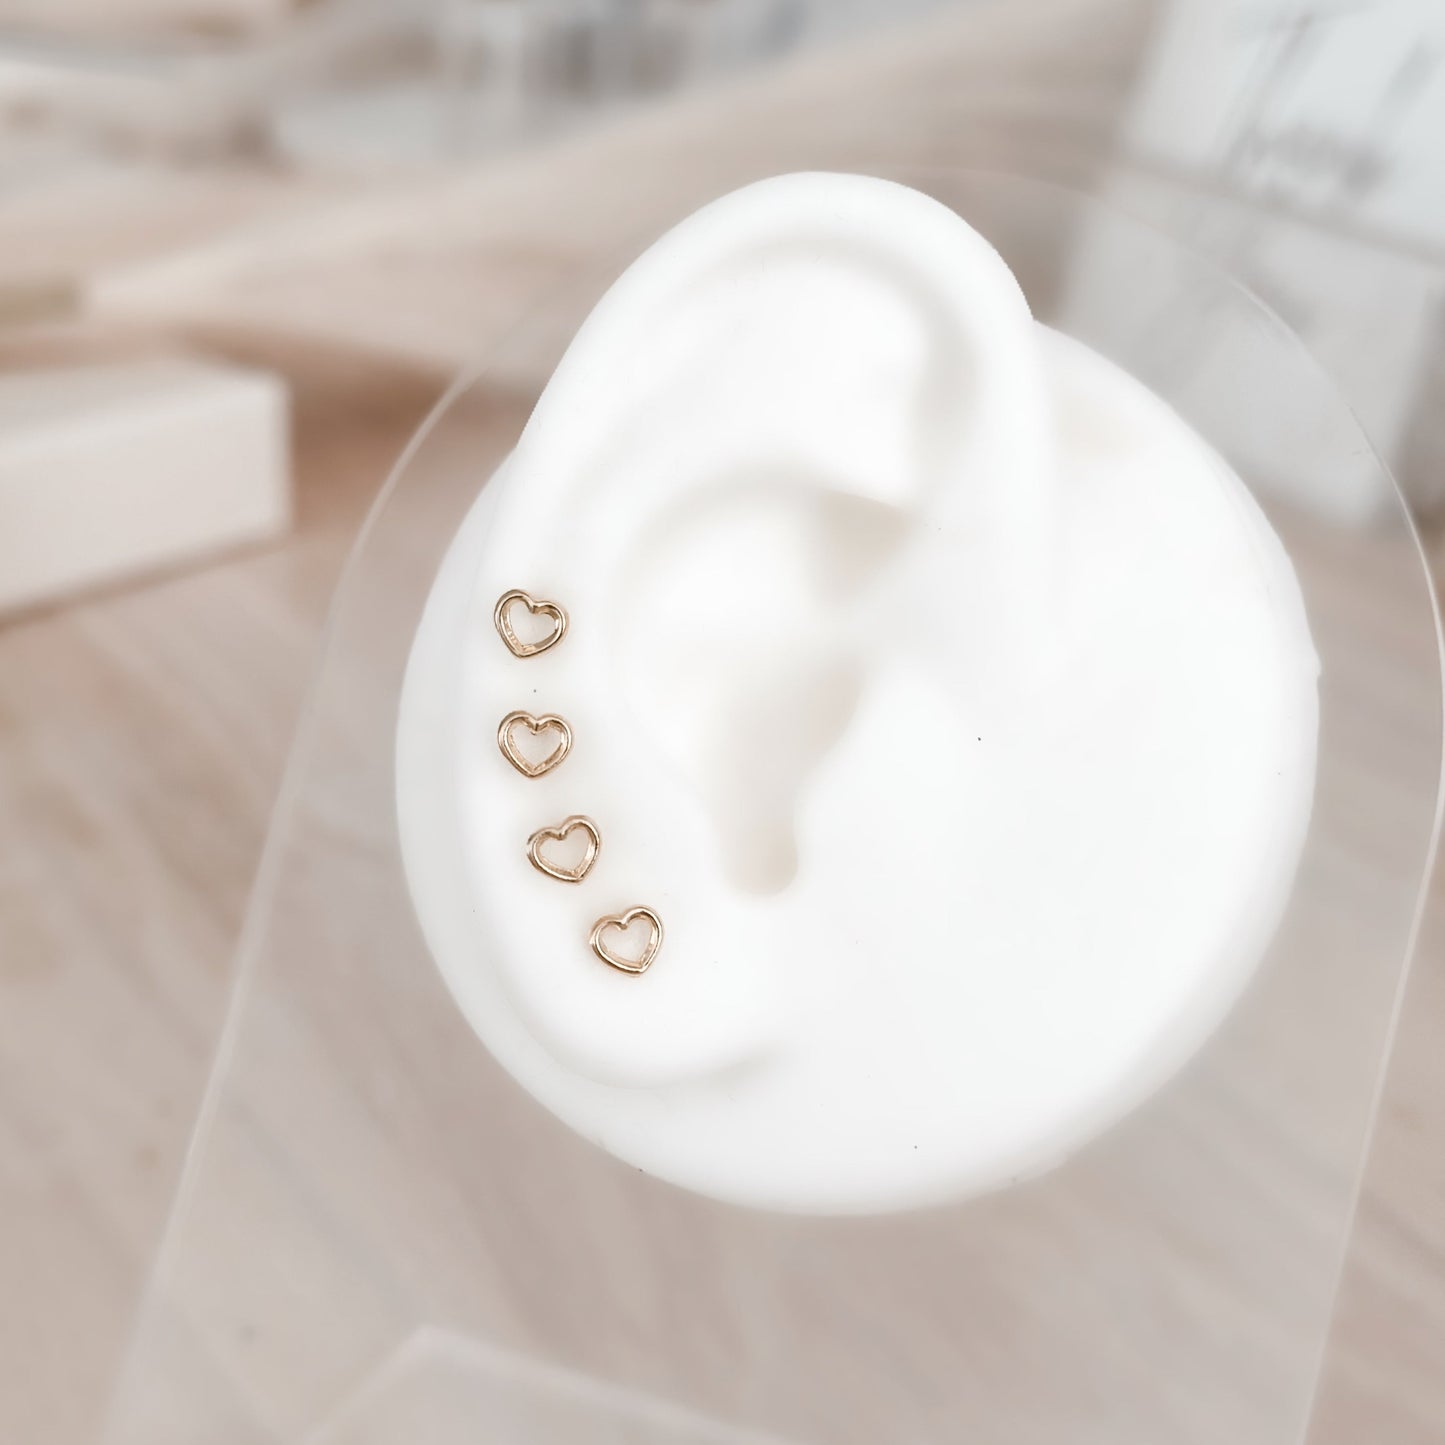 Heart Silhouette Stud Earrings 10K Gold